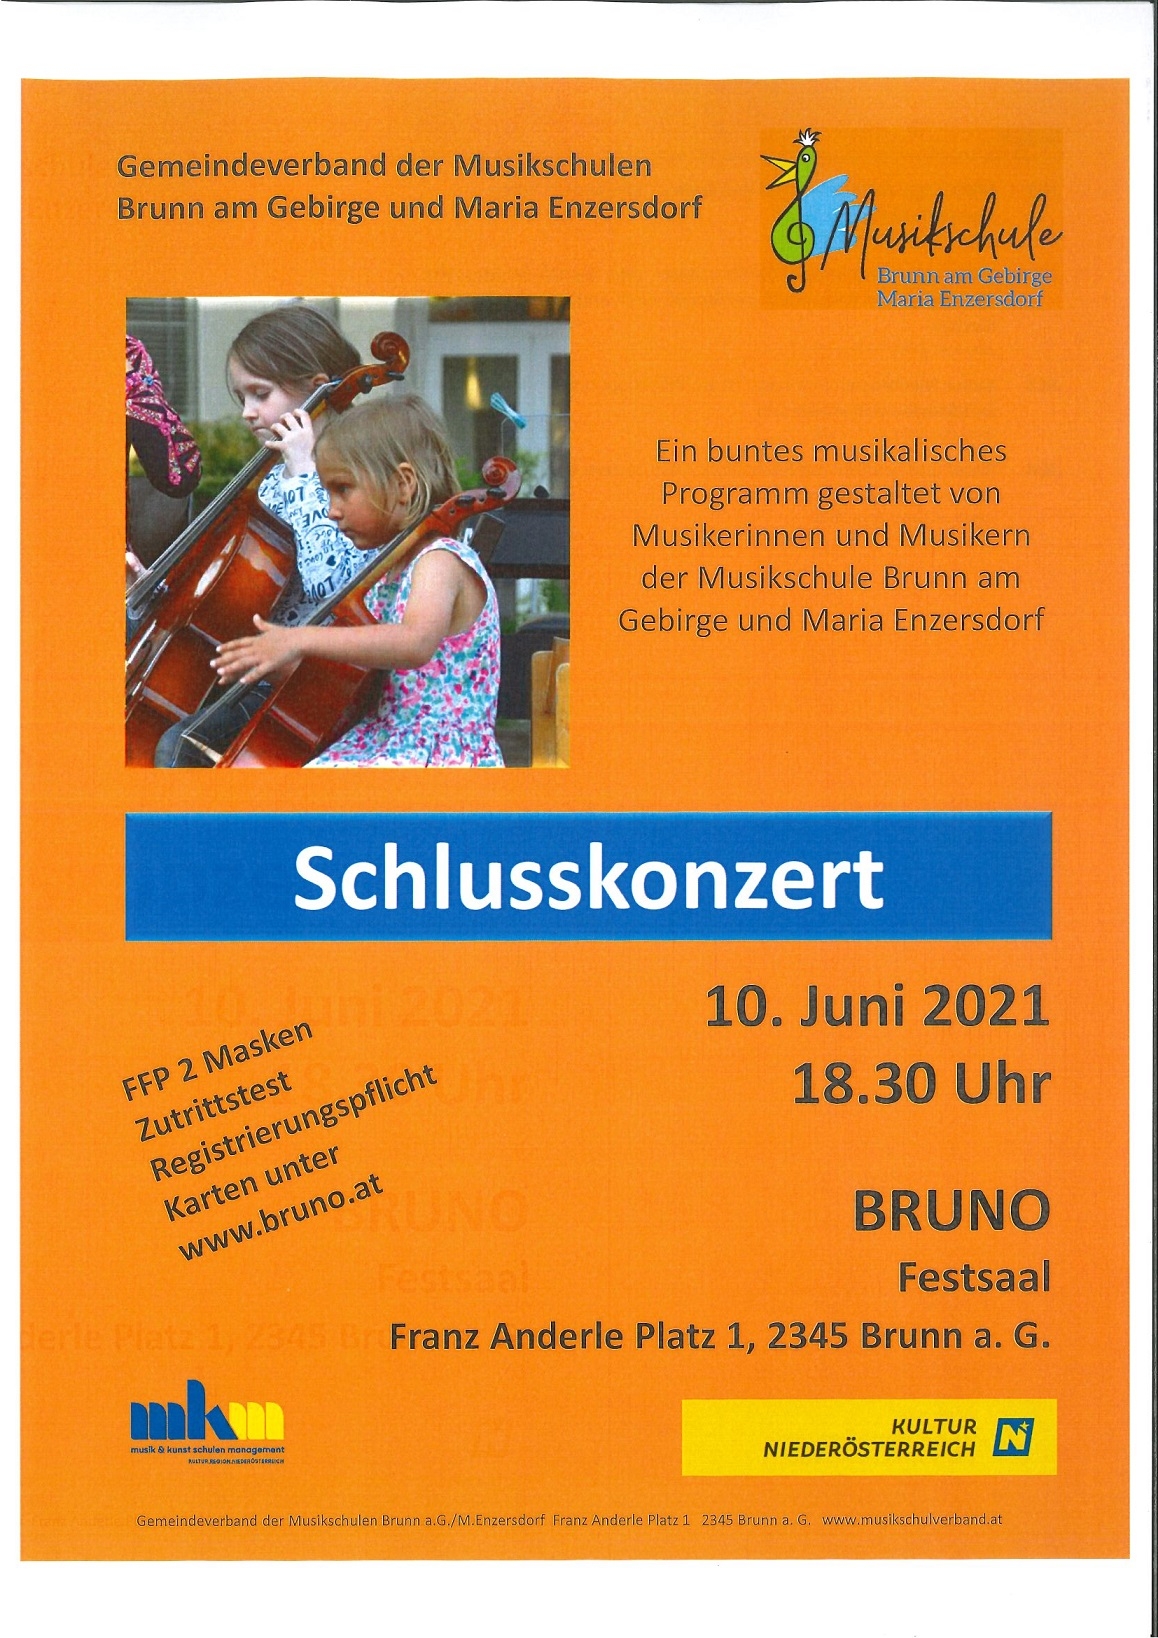 Abschlusskonzert der Musikschule Brunn am Gebirge und Maria Enzersdorf